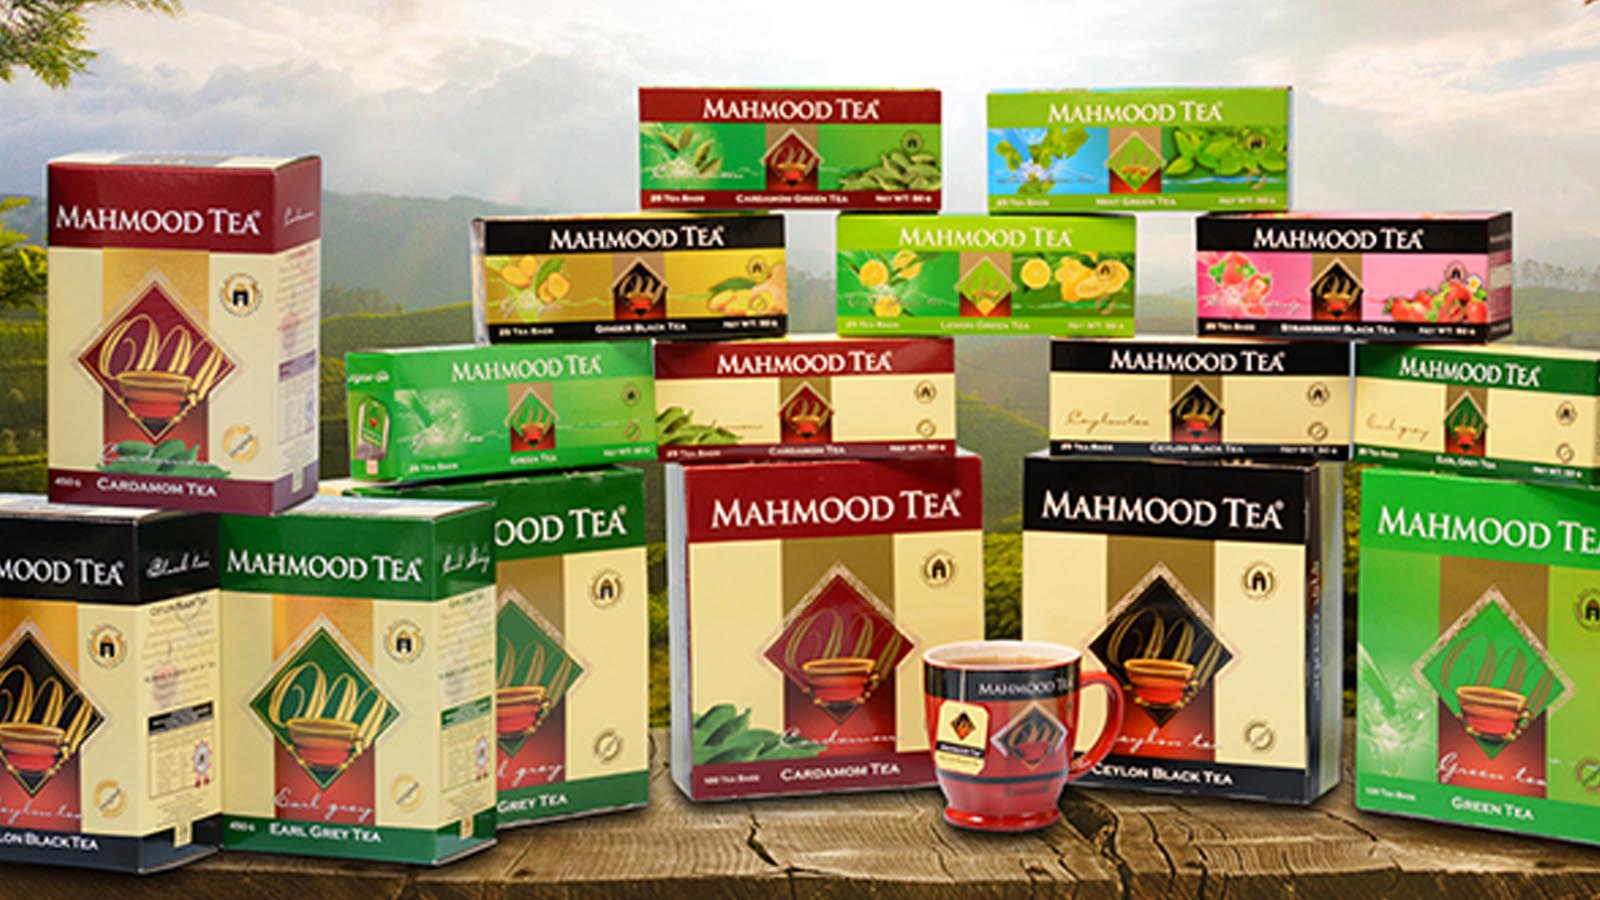 MAHMOOD TEA INTERNATIONAL PVT LTD